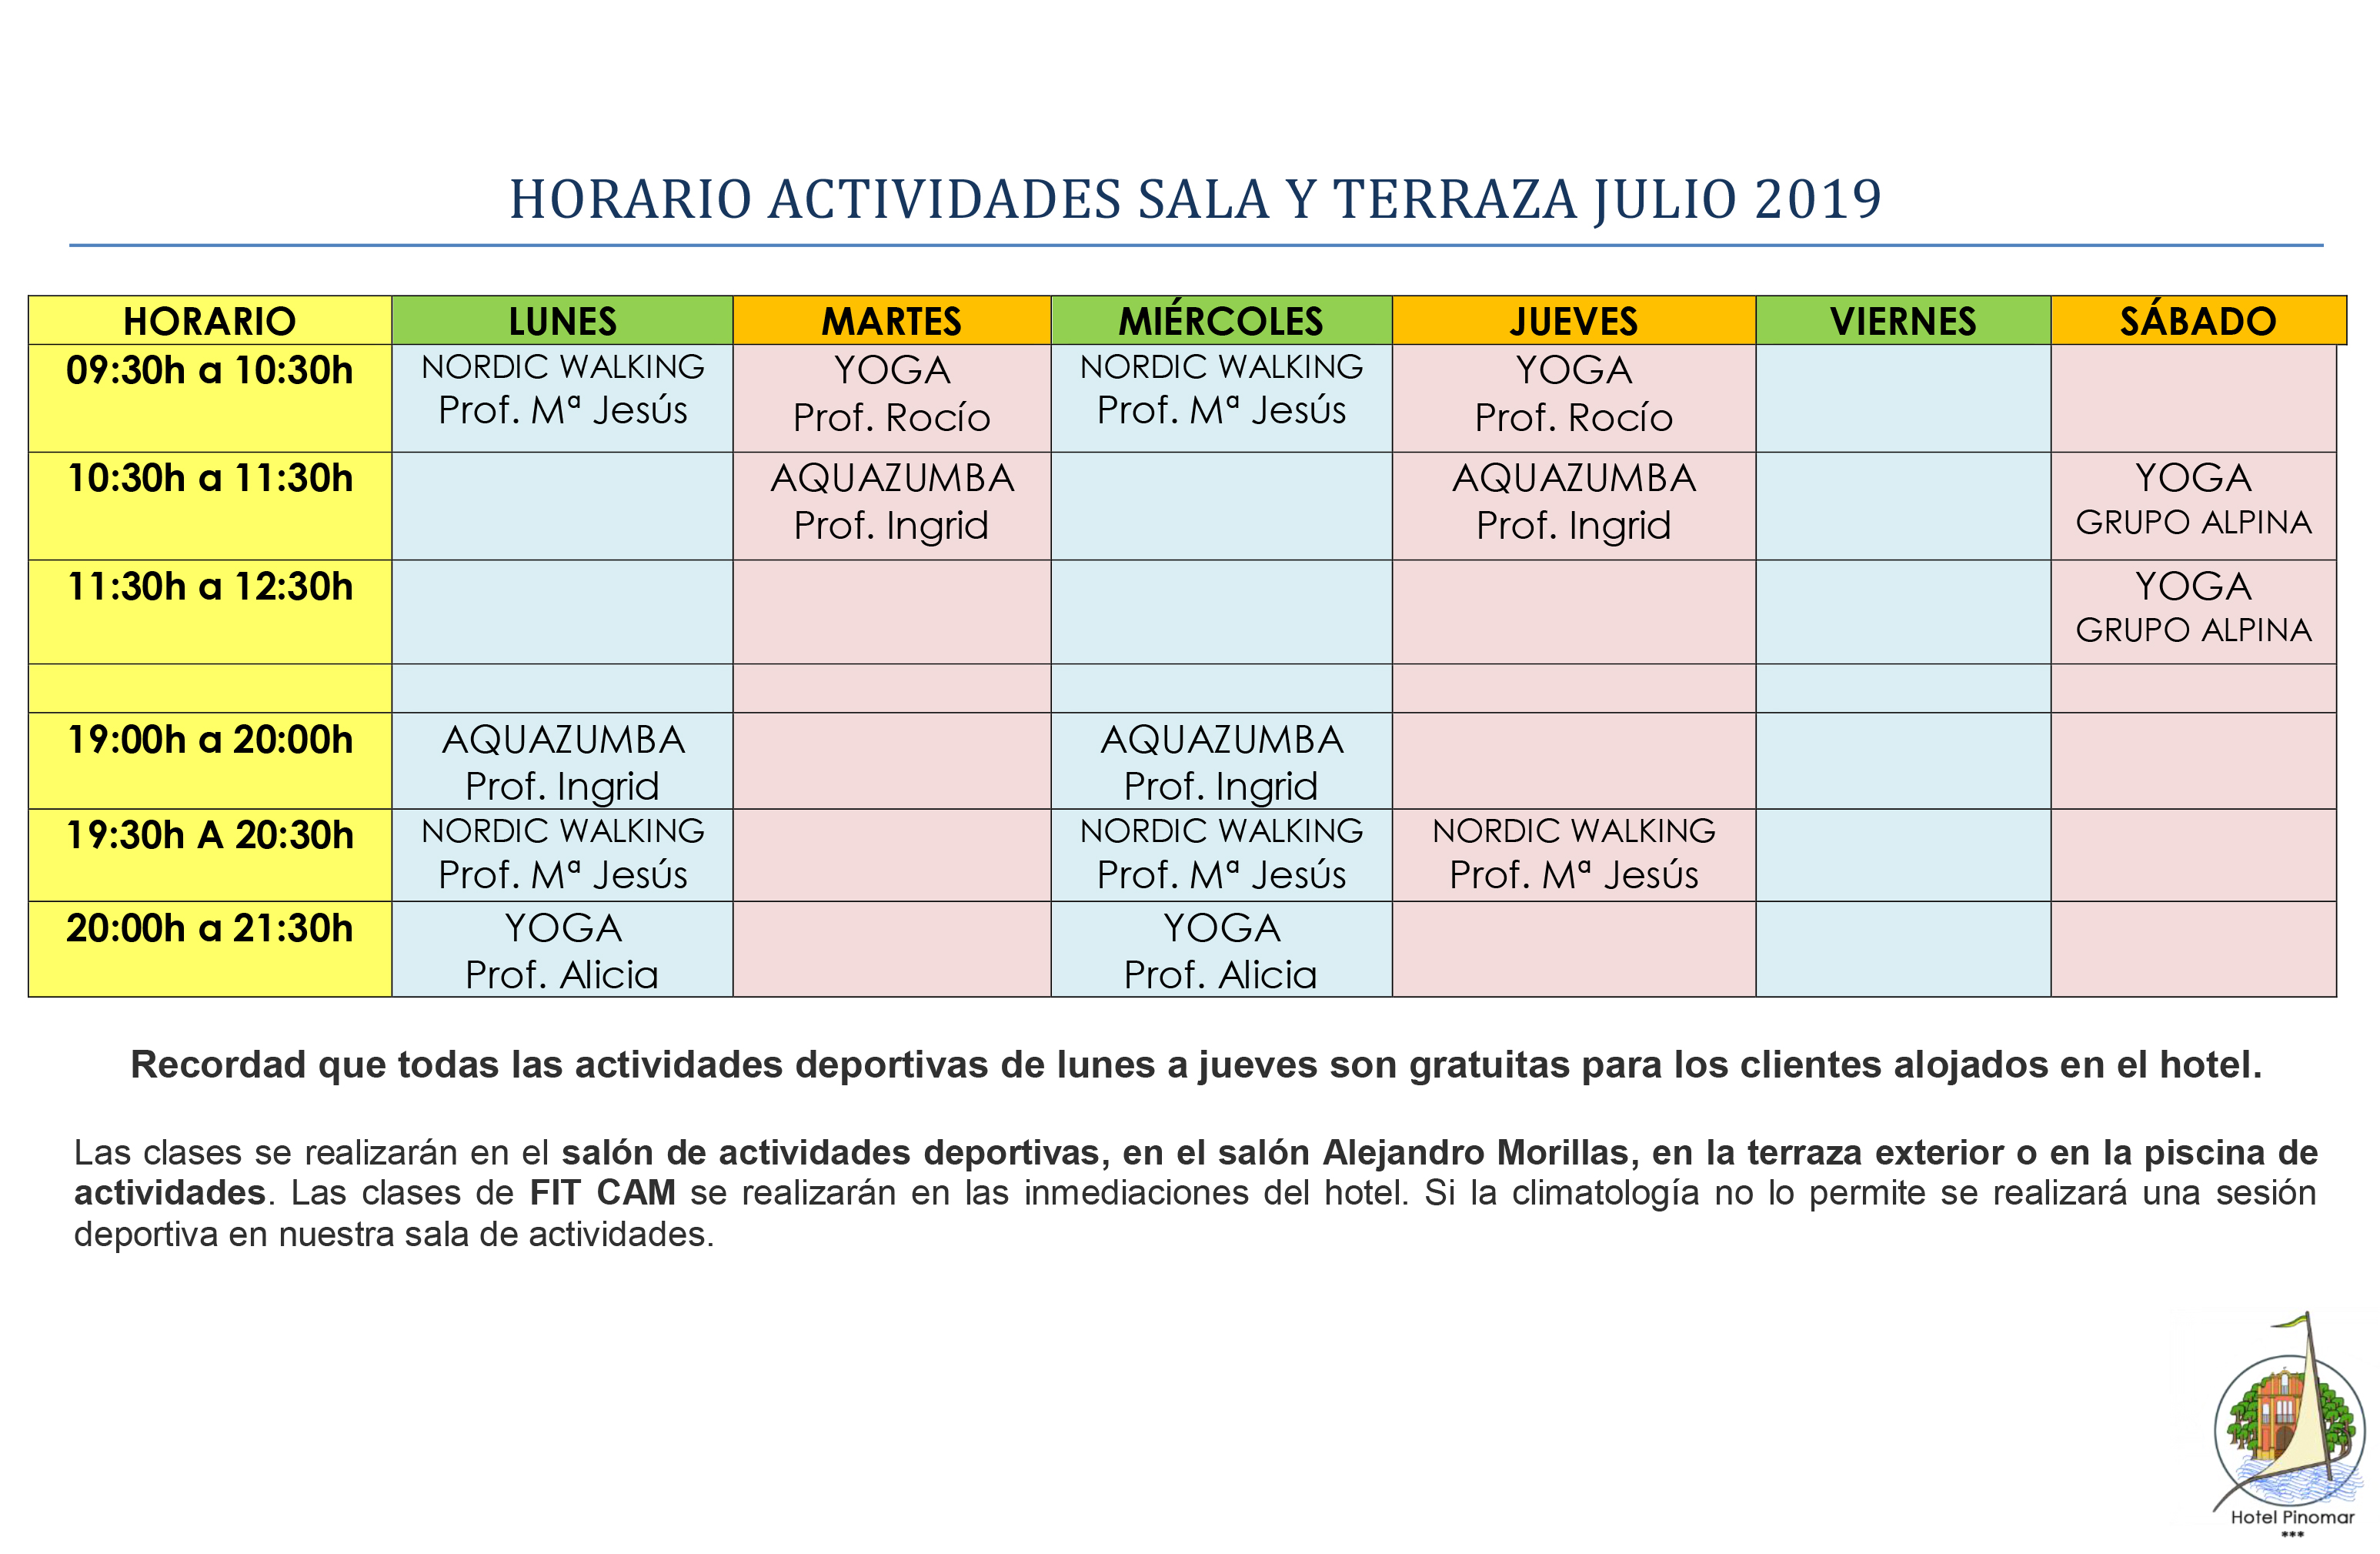 HORARIO ACTIVIDADES DIRIGIDAS JULIO 2019